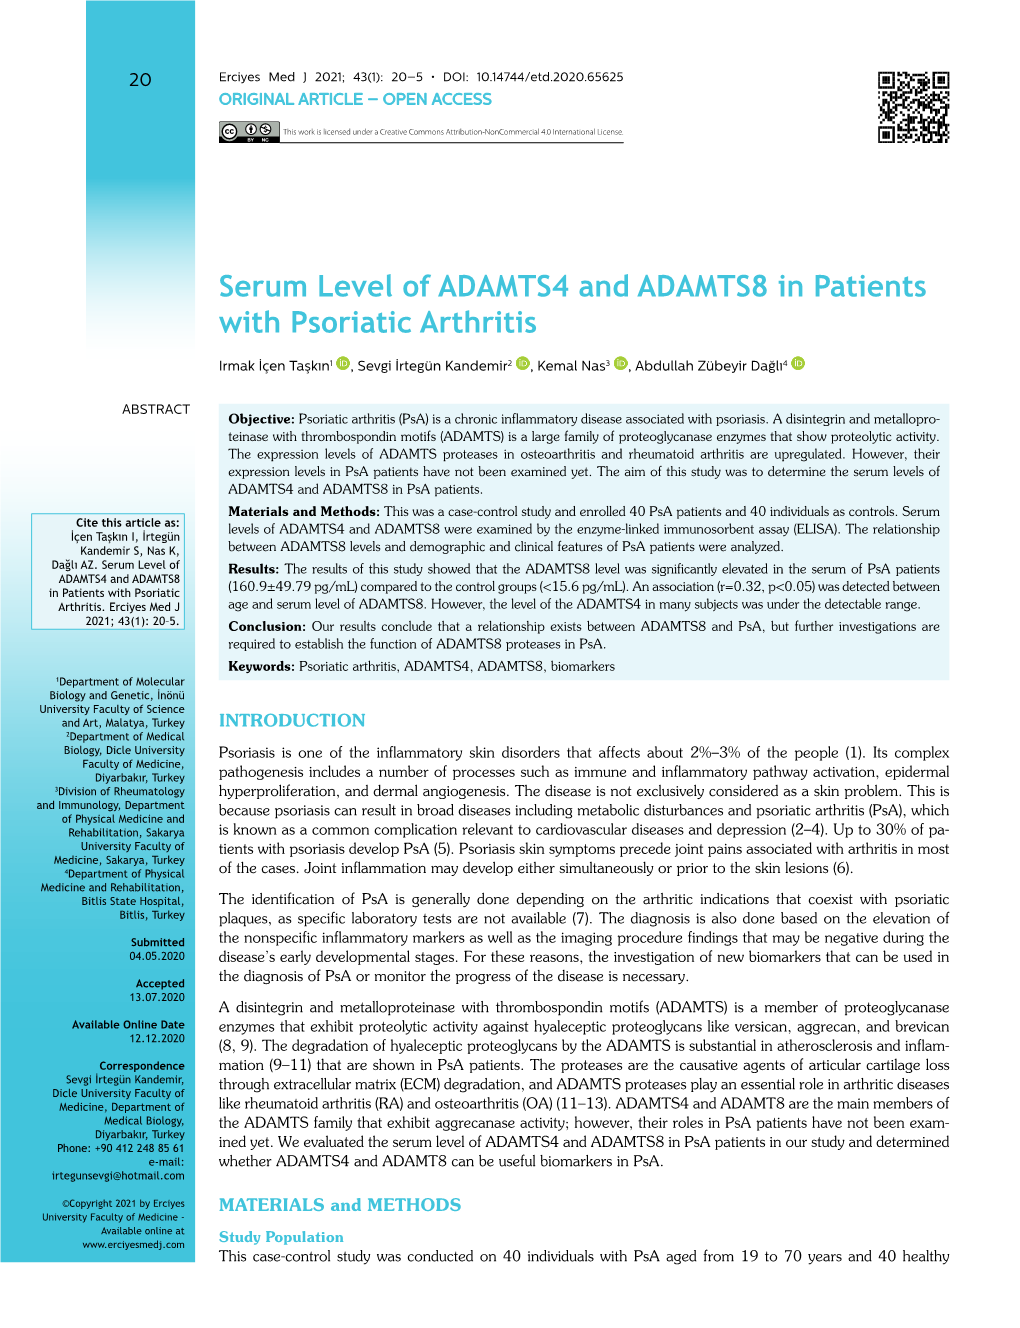 Serum Level of ADAMTS4 and ADAMTS8 in Patients with Psoriatic Arthritis